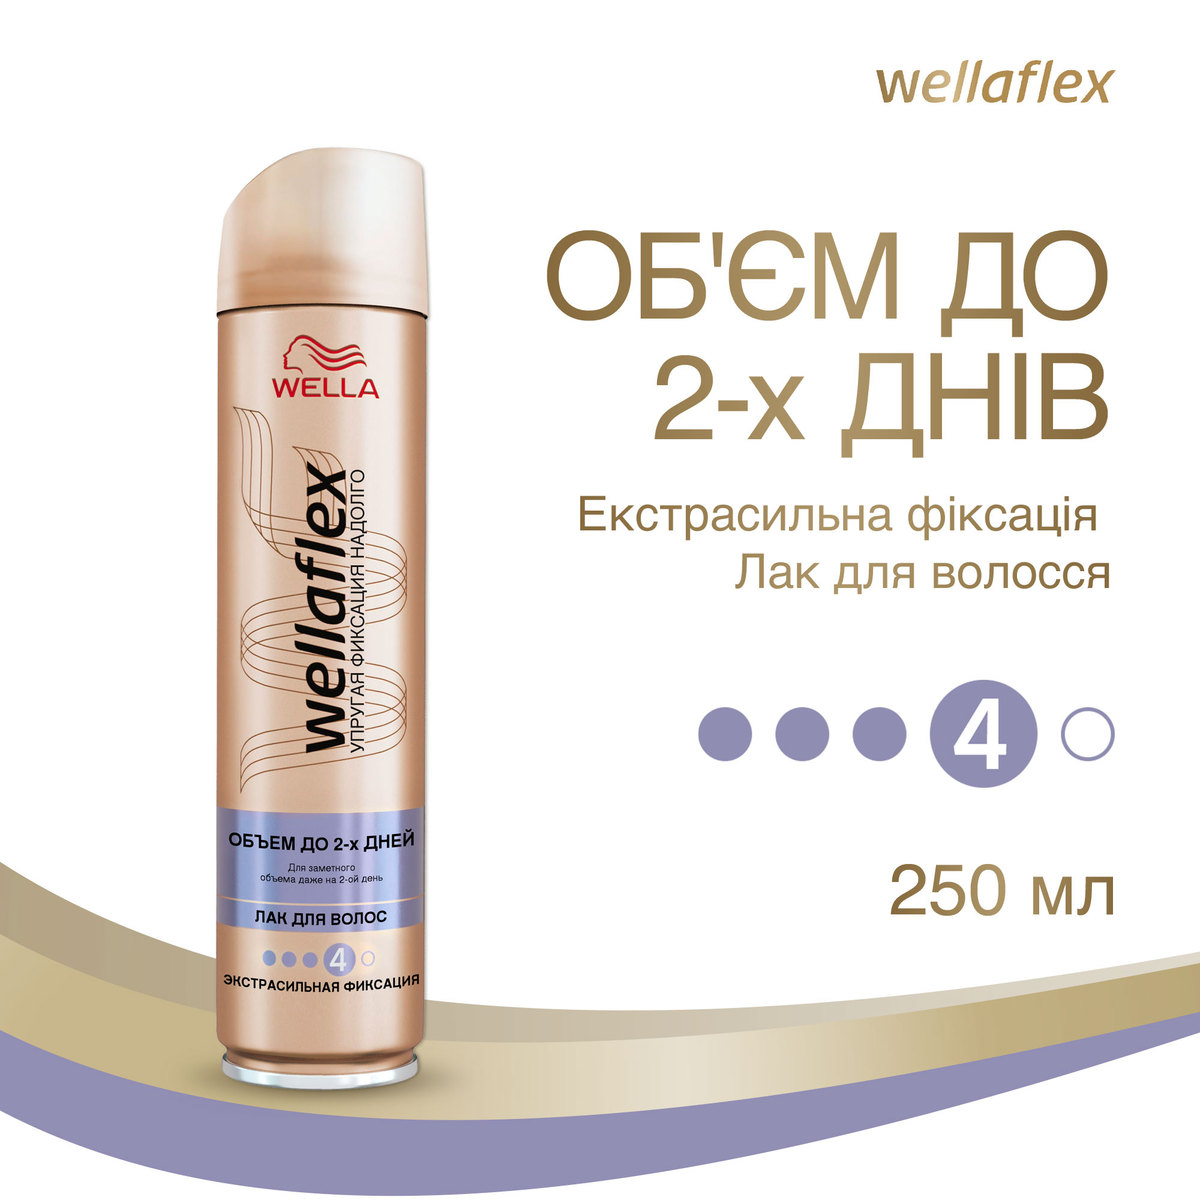 Лак для волосся Wellaflex об'єм до 2-х днів, екстрасильна фіксація, 250 мл - фото 3